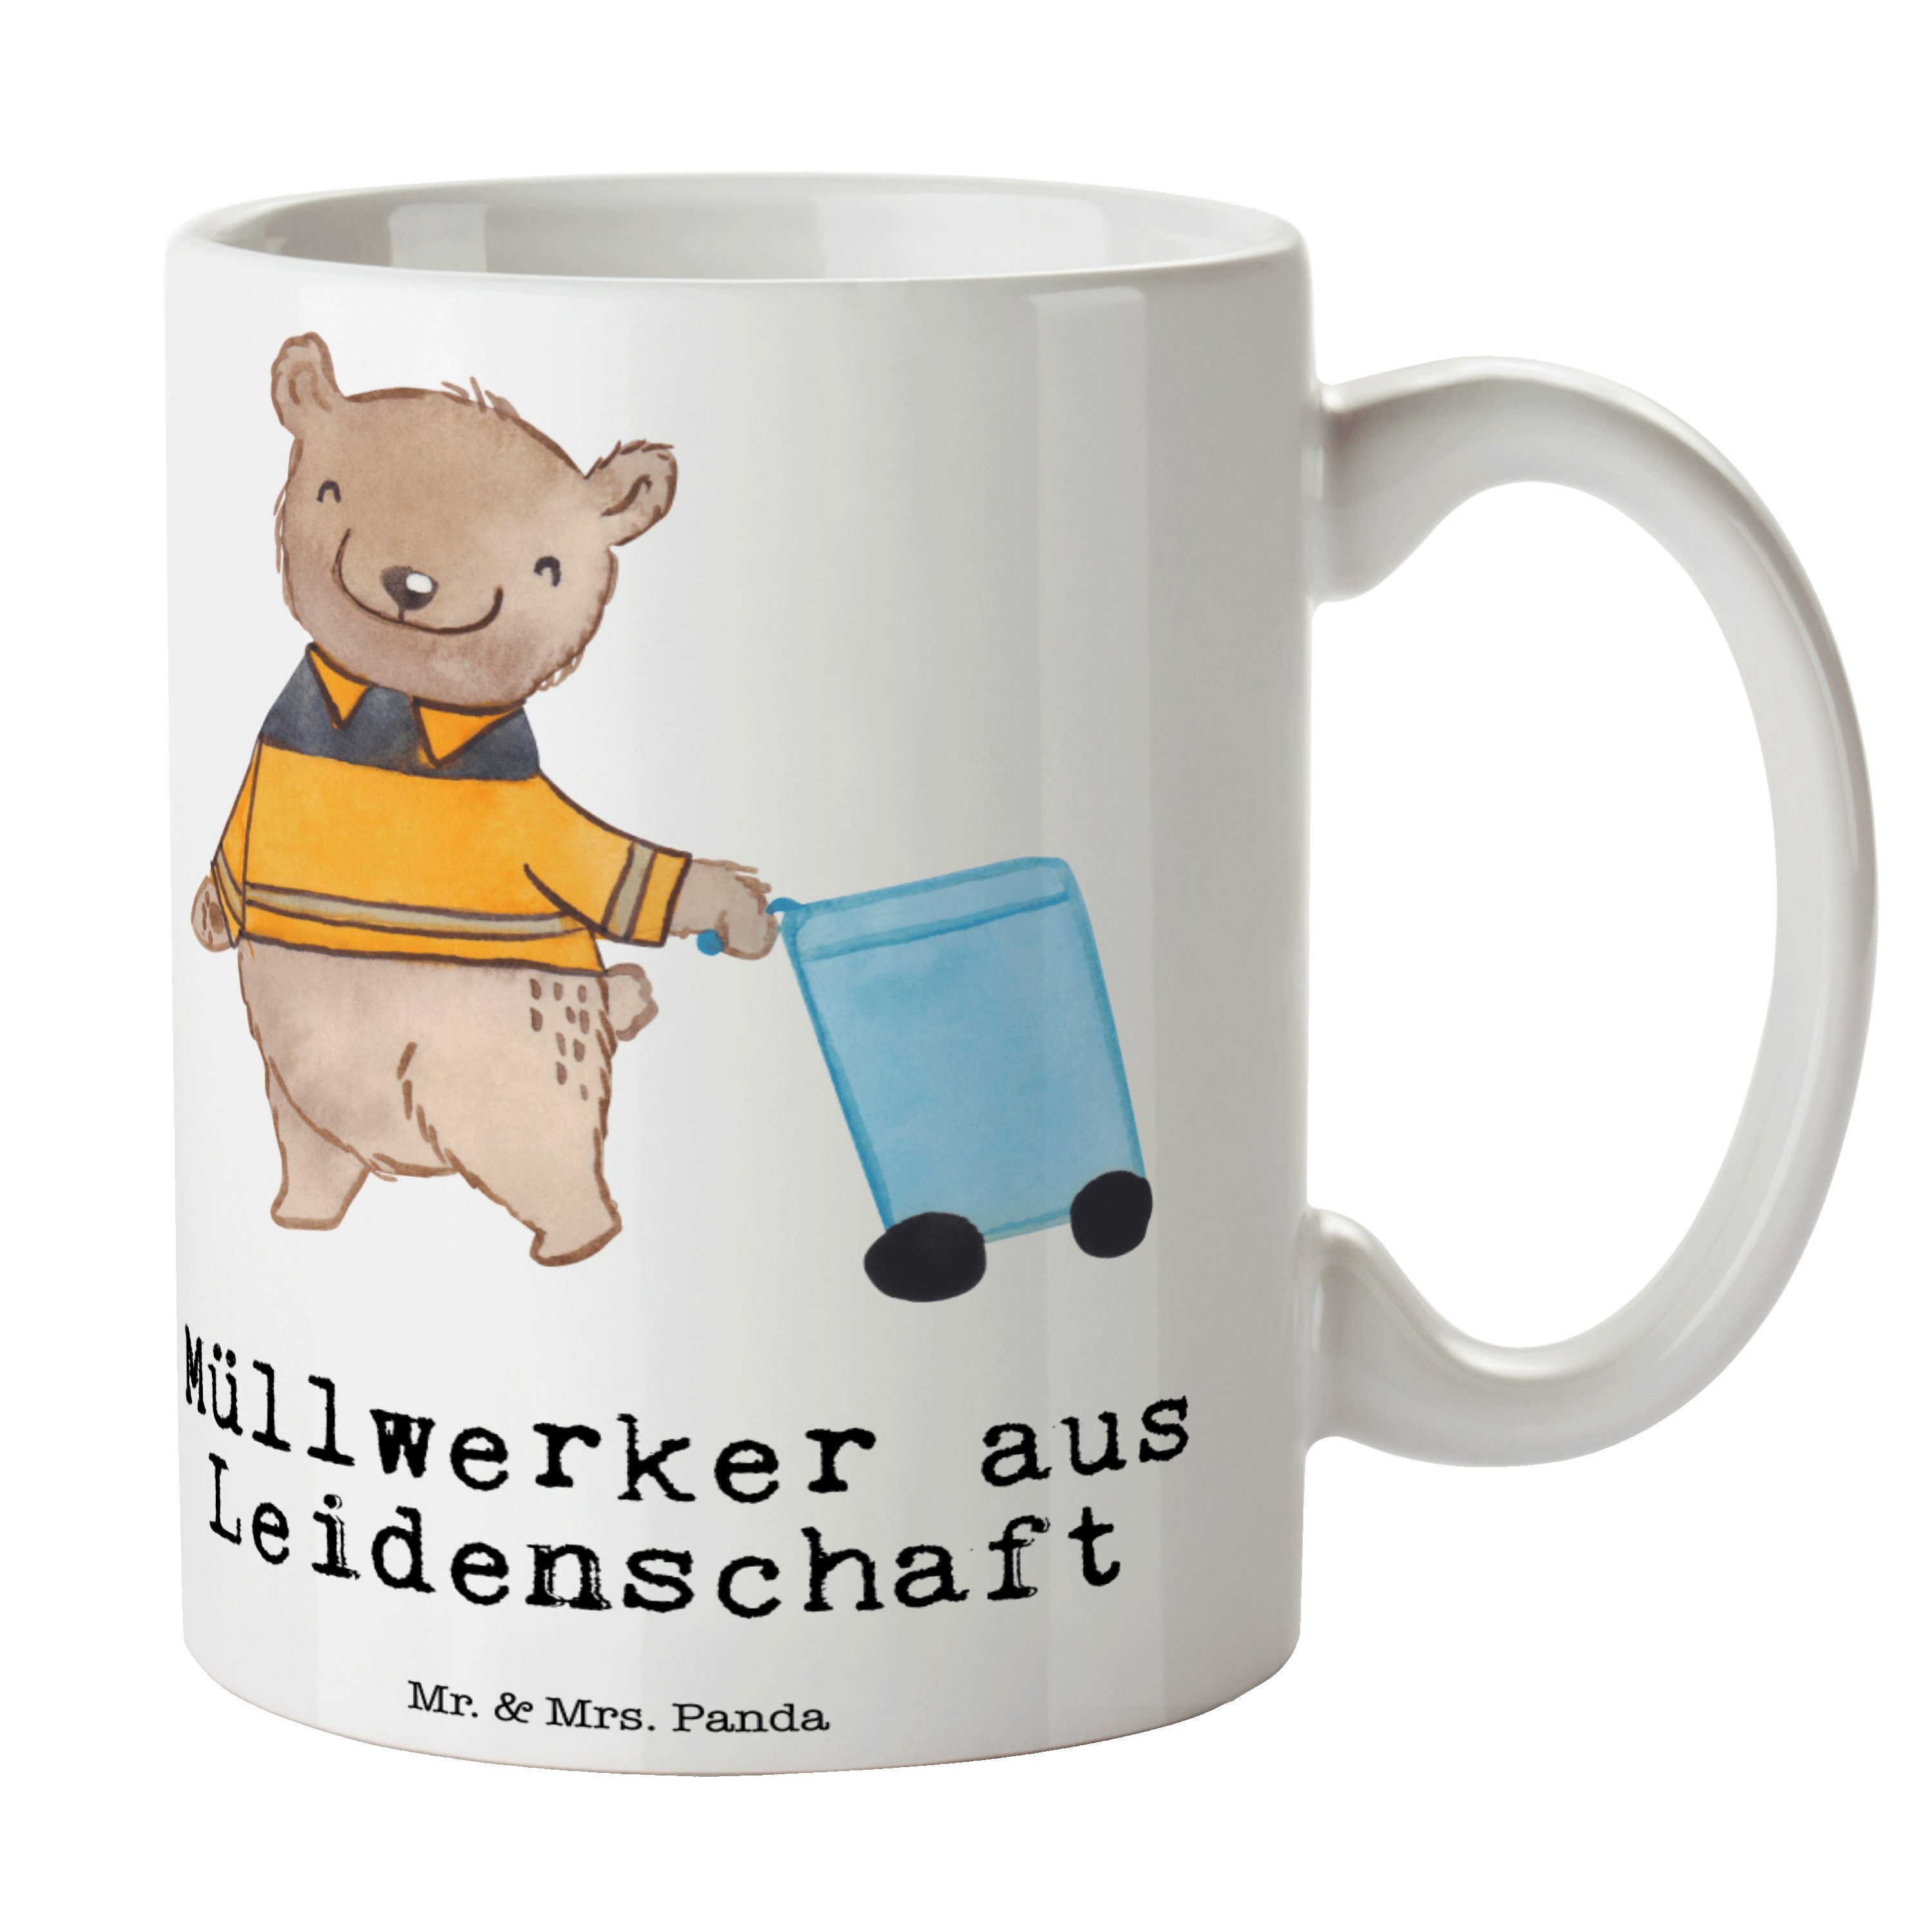 Mrs. & - Kollegin, Keramik Geschenk, aus Kehrichtmann, Mr. Leidenschaft Panda - Weiß Tasse Müllwerker